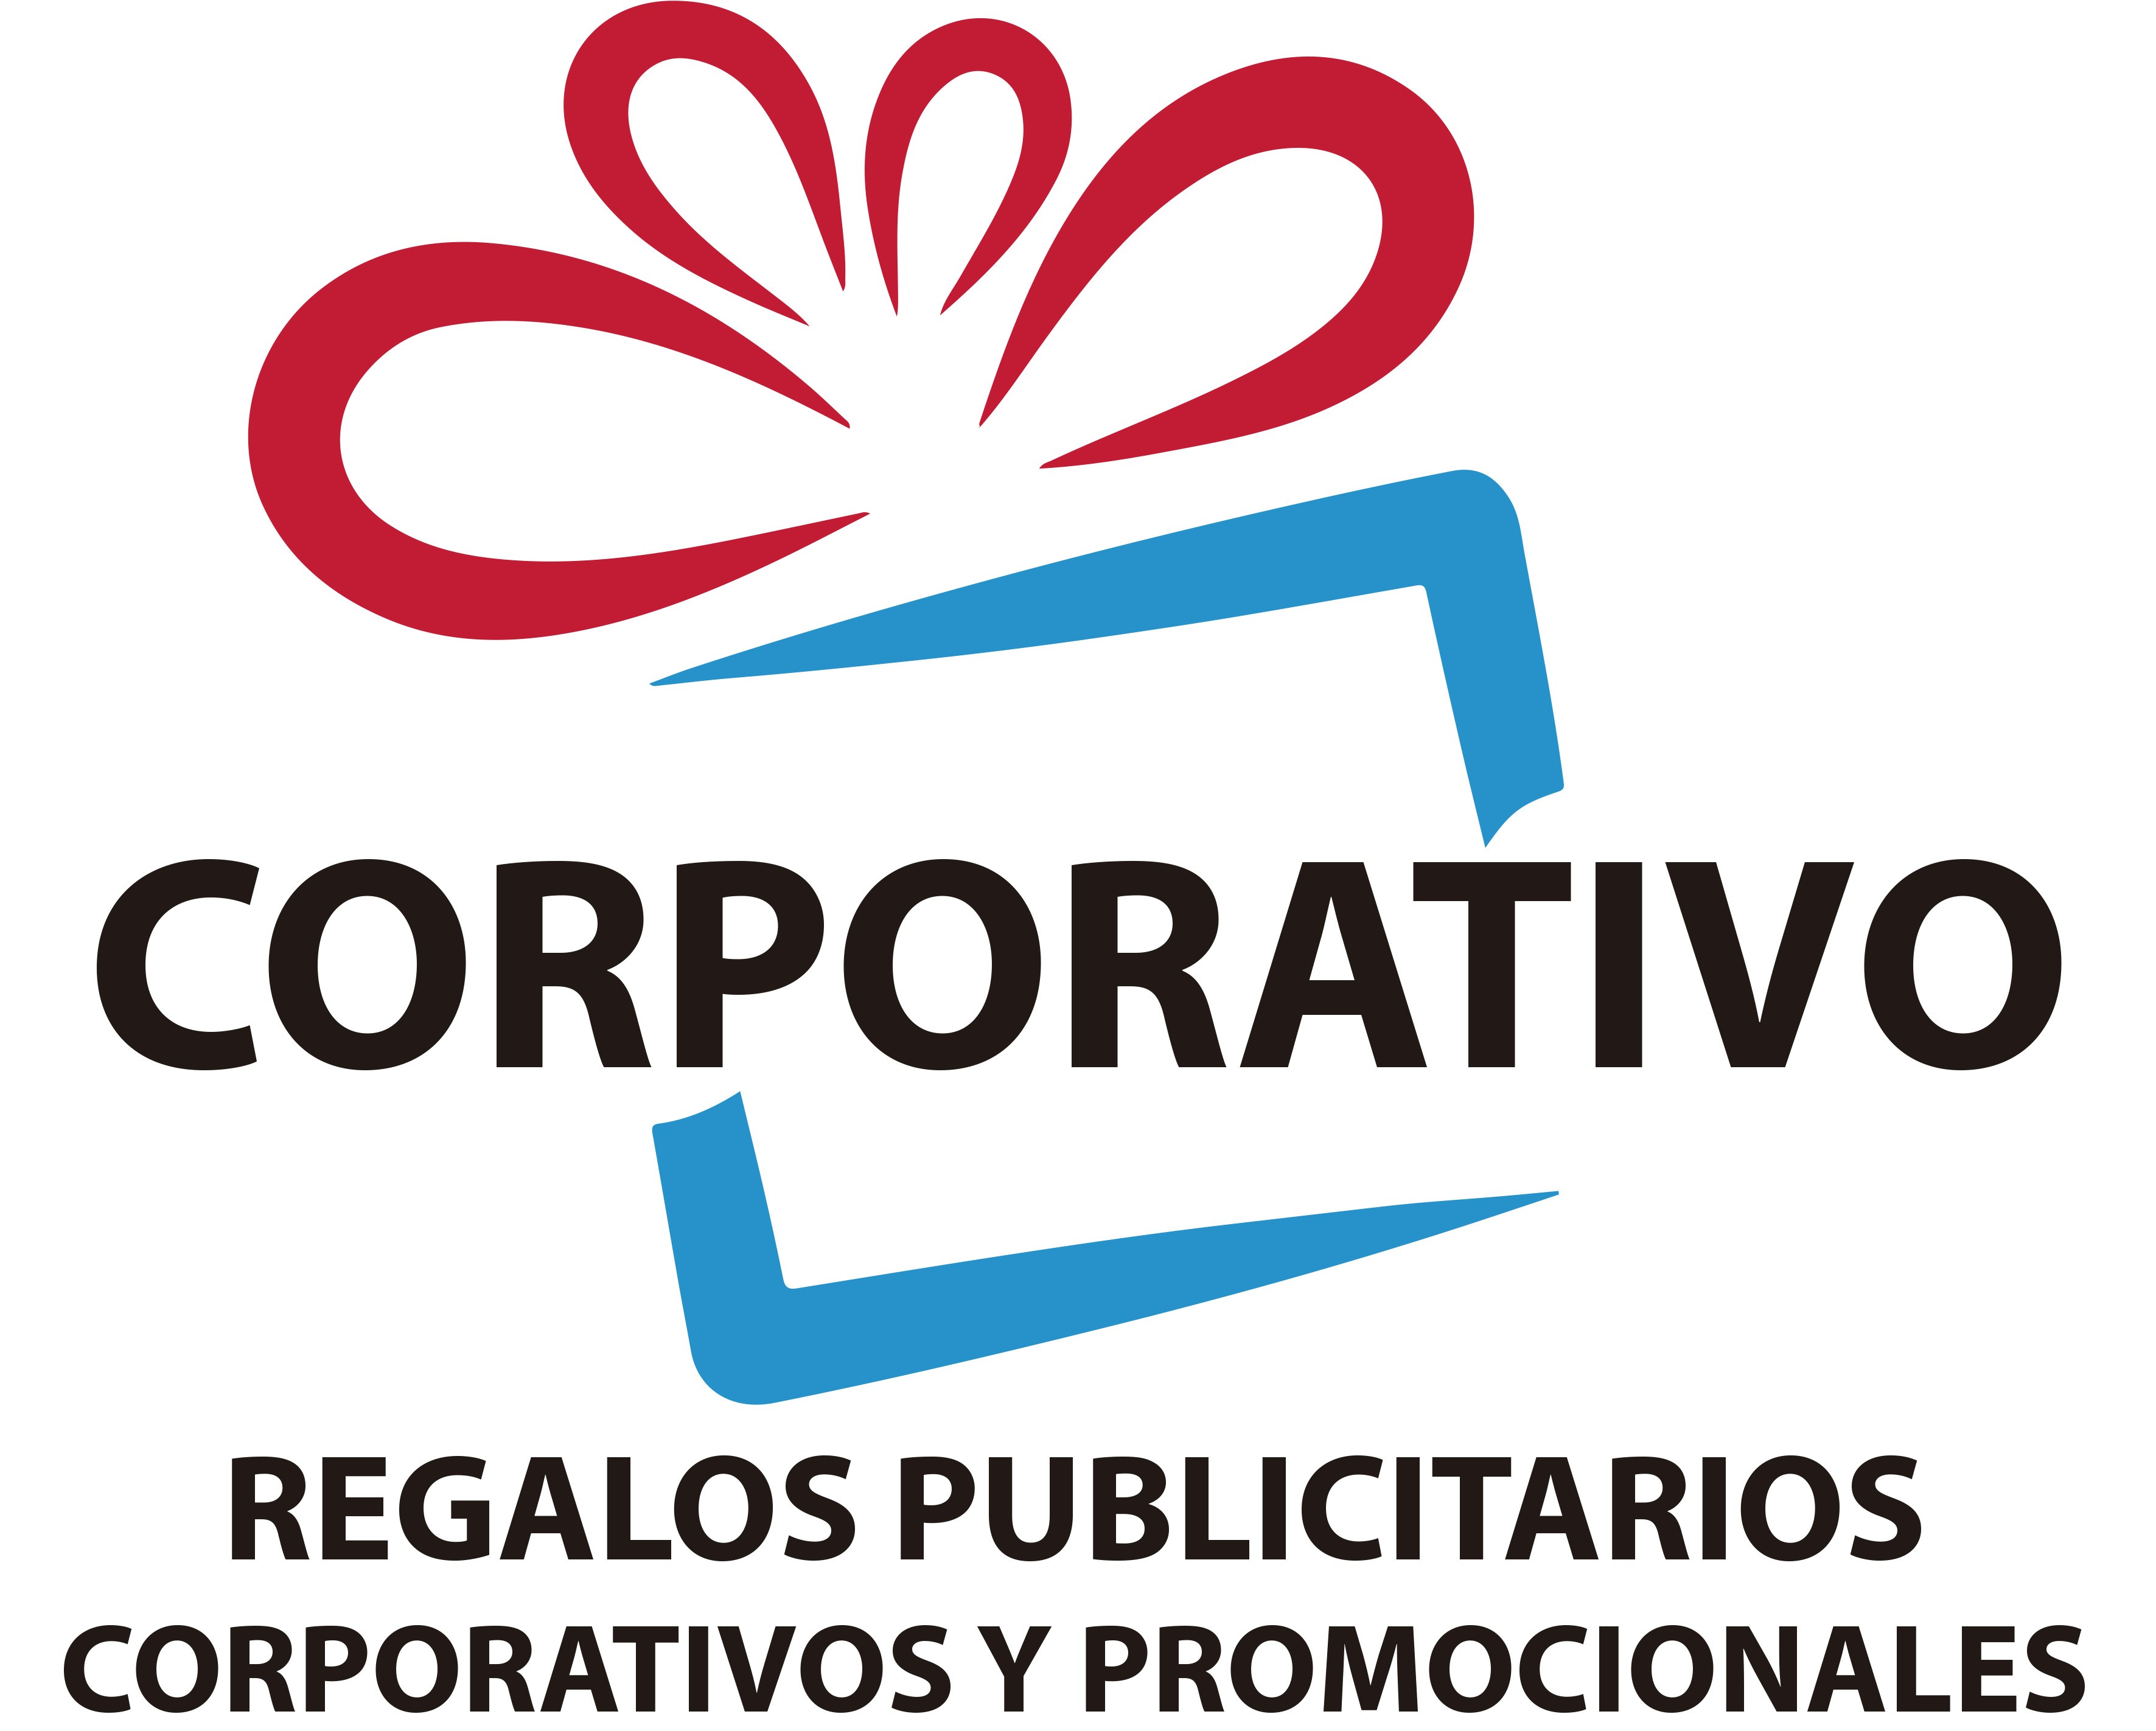 Corporativo Regalos Publicitarios